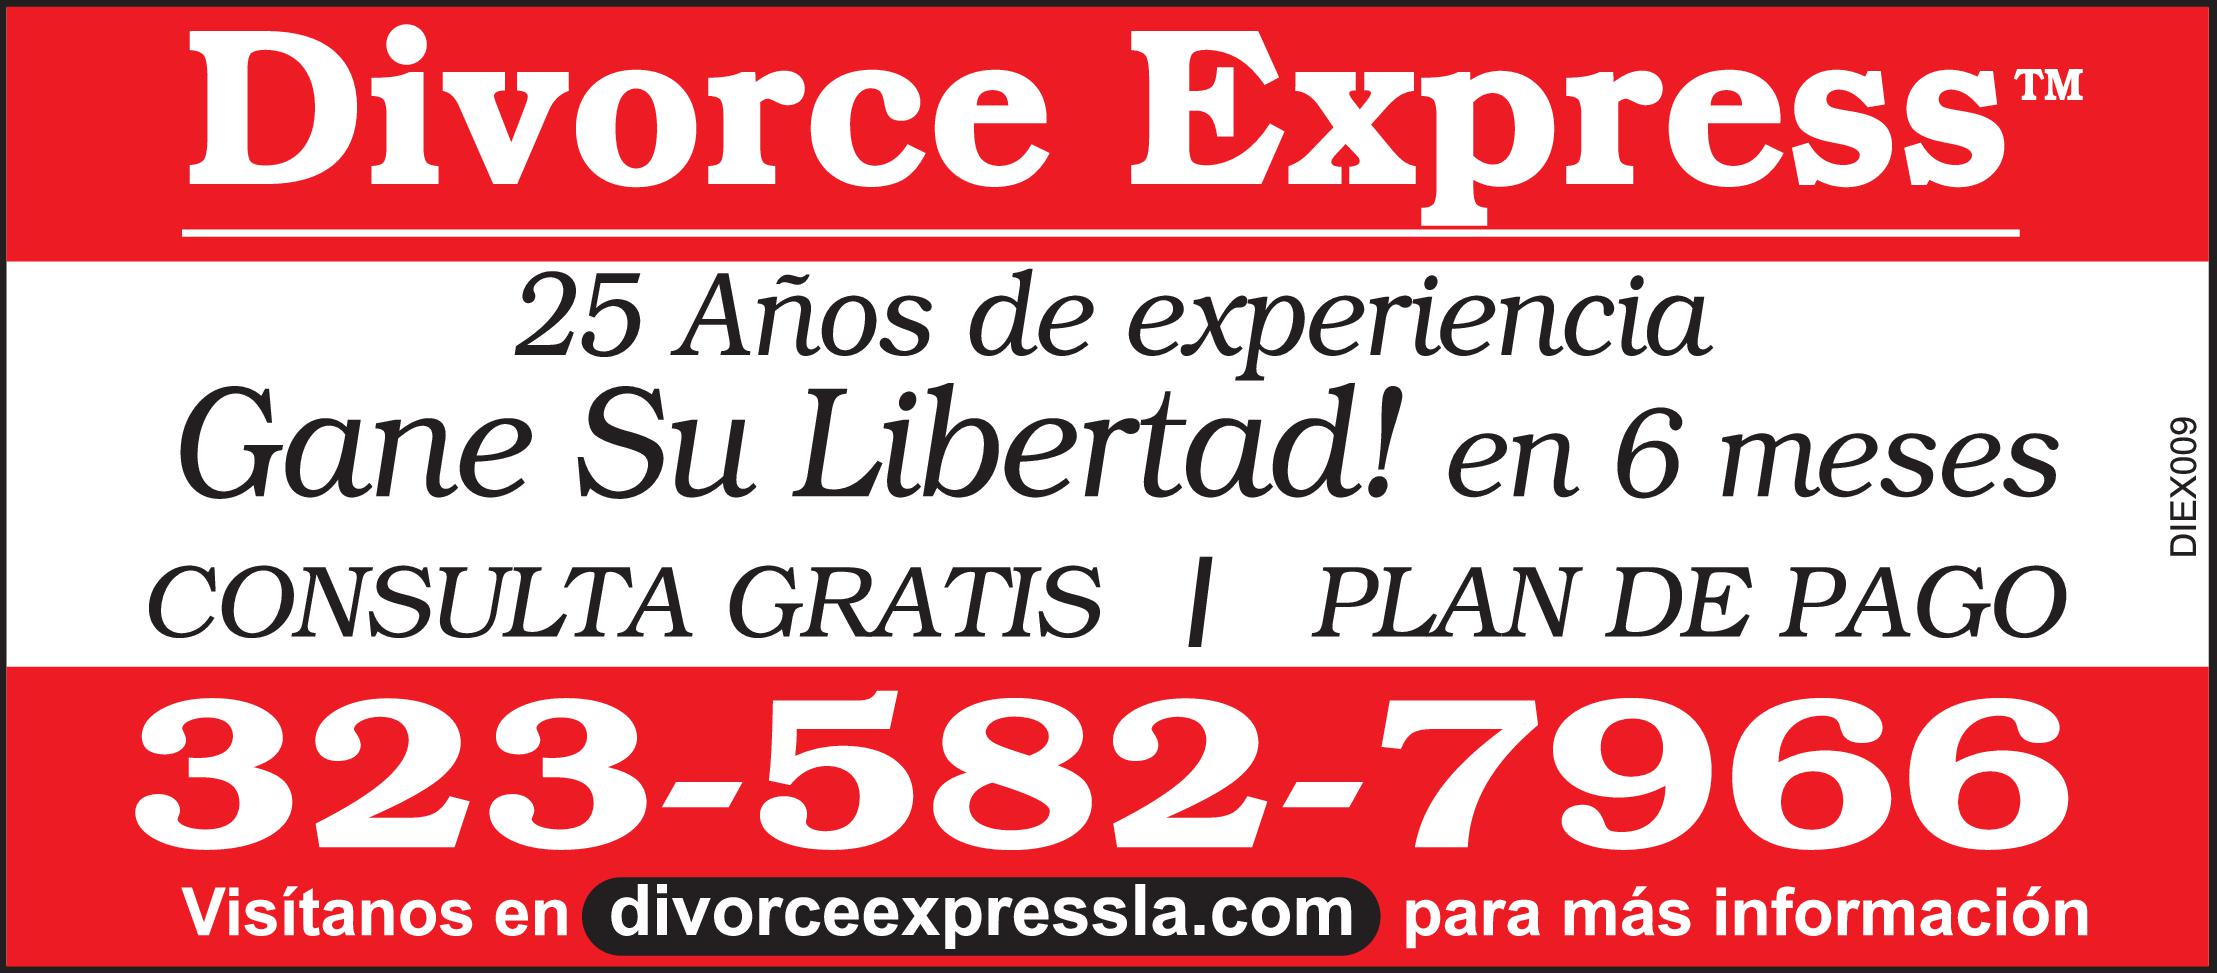 Divorce Express Gane Su Libertad en 6 meses DIVORCIOS $450 CONSULTA GRATIS PLAN DE PAGO 
323-582-7966 divorceexpressla.com